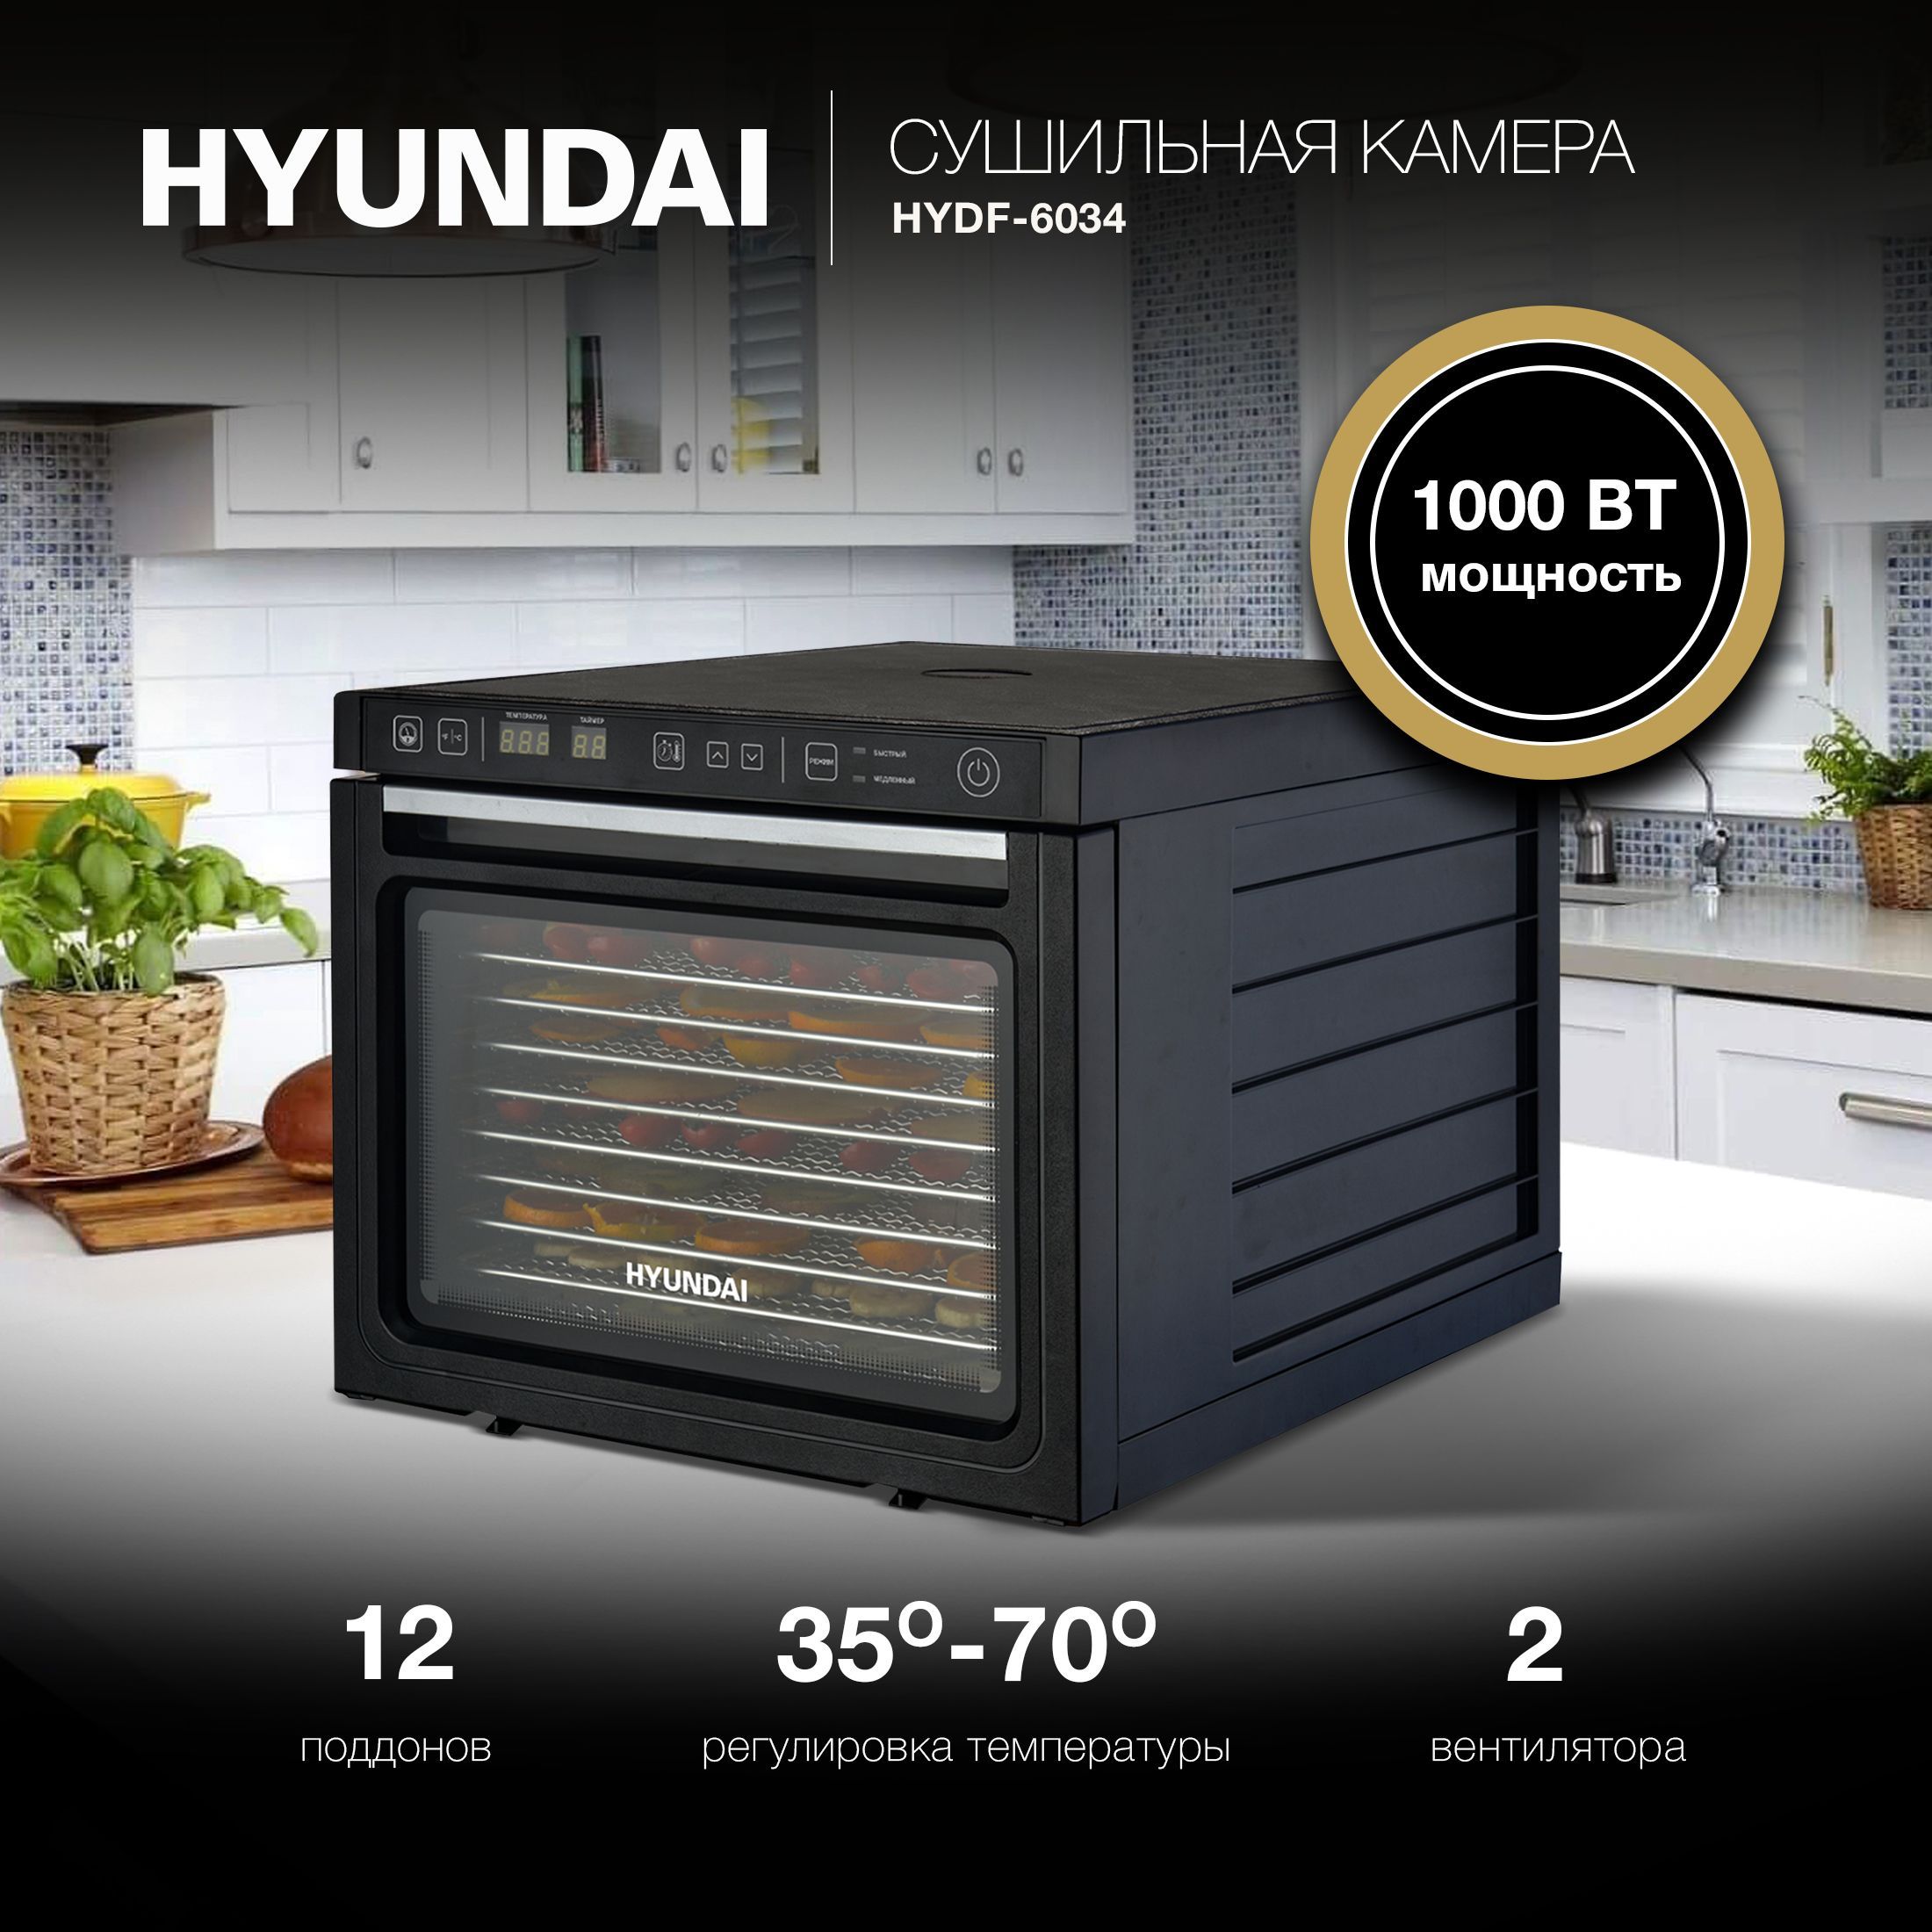 Hyundai hydf 6034. Сушилка для овощей и фруктов Hyundai HYDF-6034. Сушилка для овощей Hyundai HYDF-5033. Сушка Хендай 6034 отзывы.